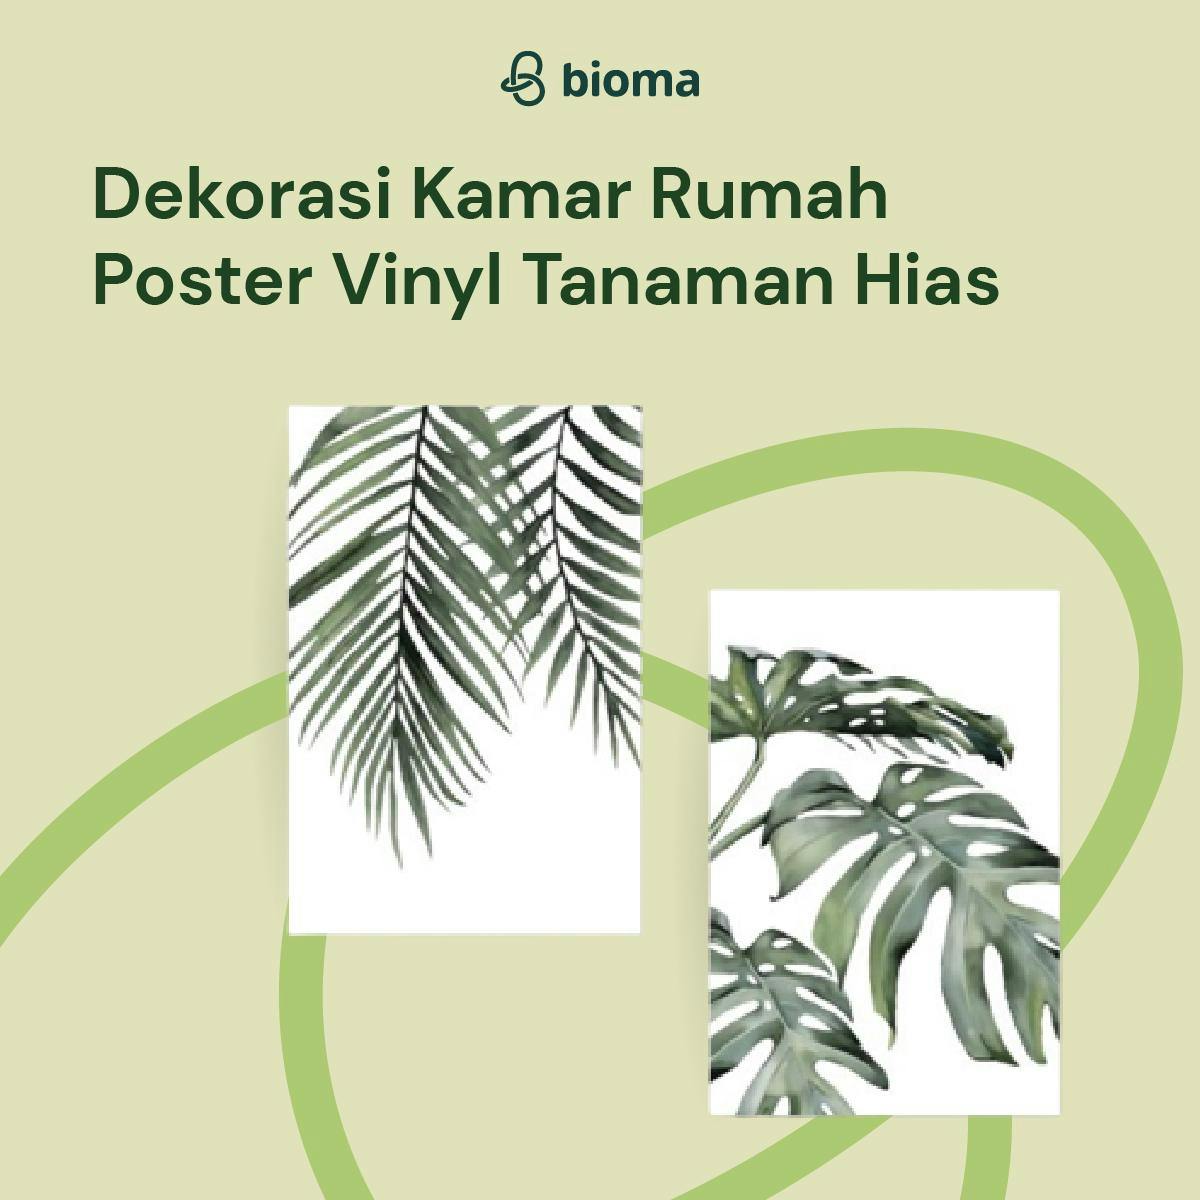 Dekorasi Kamar Rumah Poster Vinyl Tanaman Hias